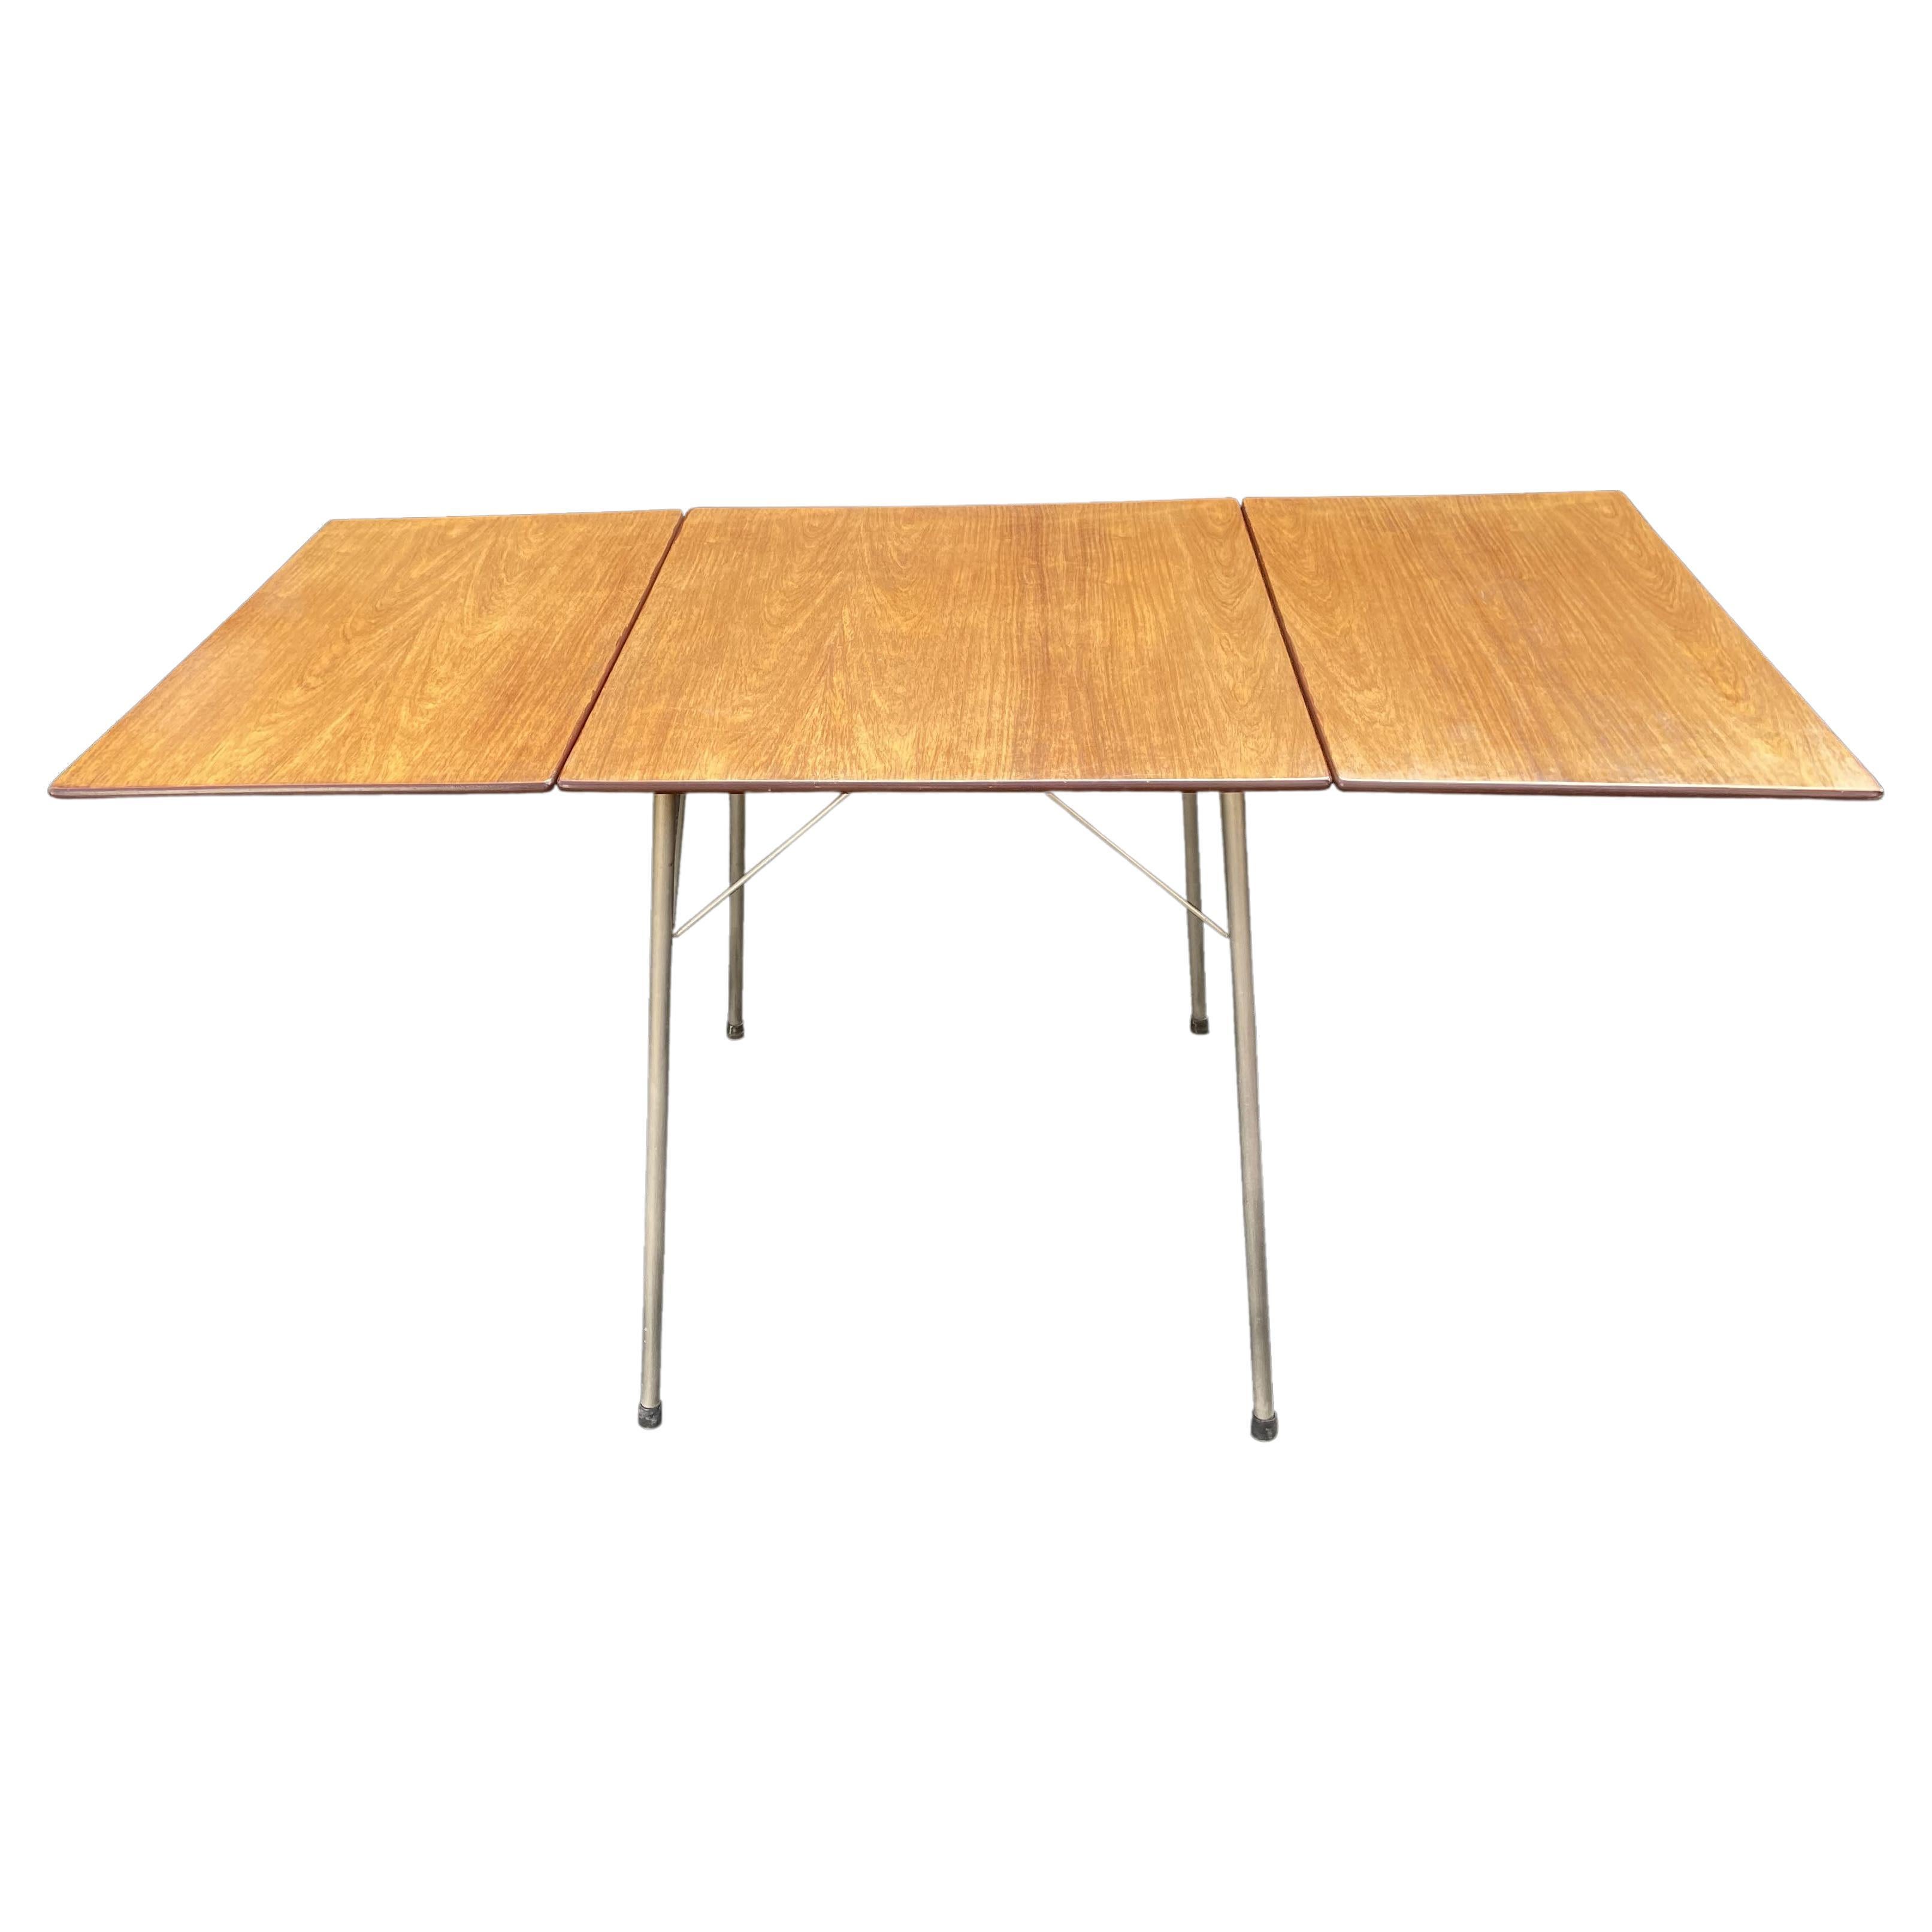 'Ant' Table Model 3601 by Arne Jacobsen for Fritz Hansen For Sale